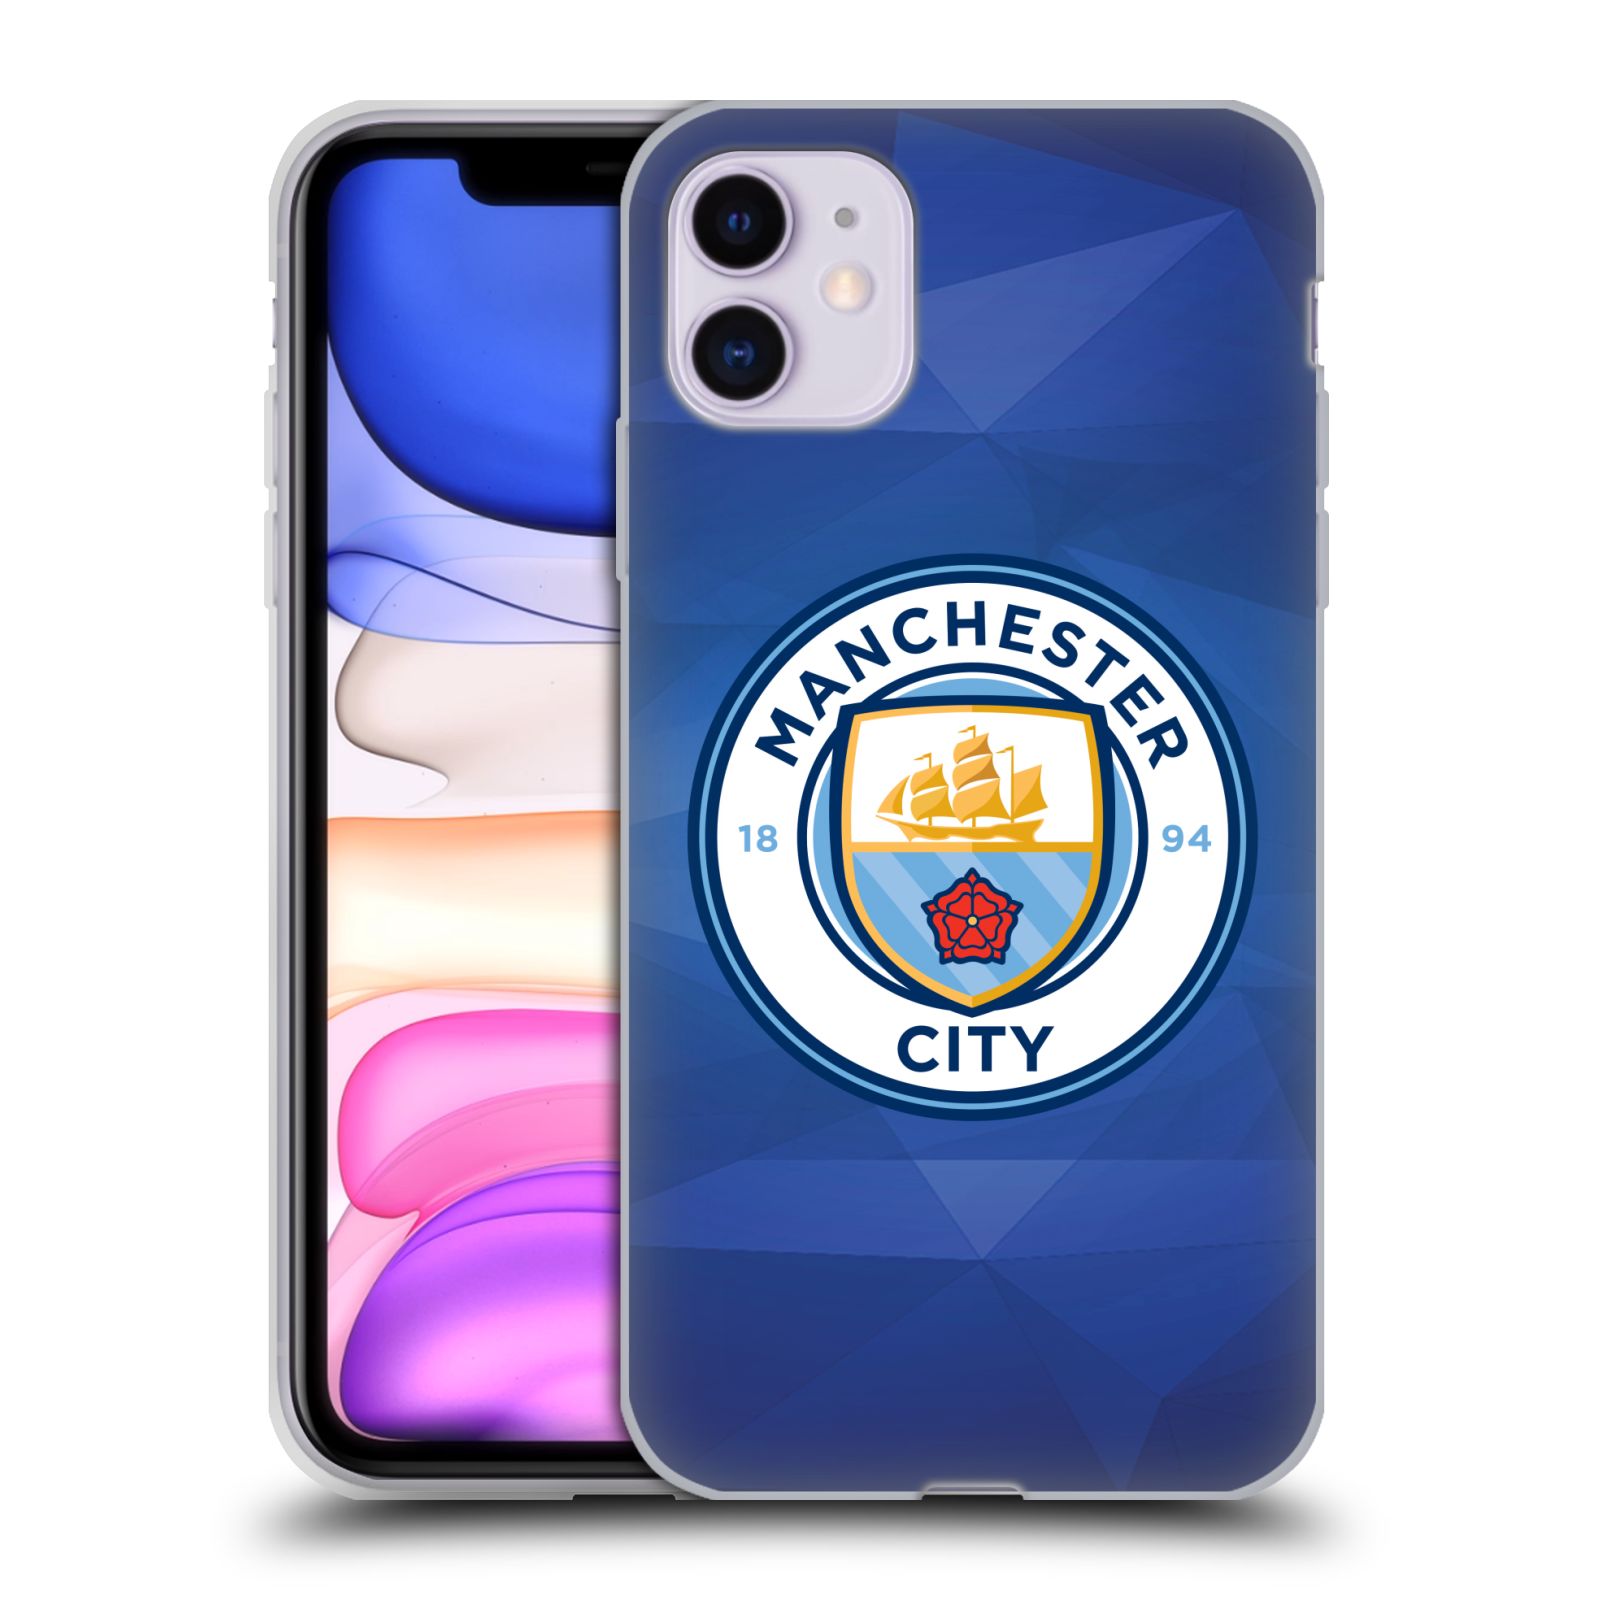 Silikonové pouzdro na mobil Apple iPhone 11 - Head Case - Manchester City FC - Modré nové logo (Silikonový kryt, obal, pouzdro na mobilní telefon Apple iPhone 11 s displejem 6,1" s motivem Manchester City FC - Modré nové logo)